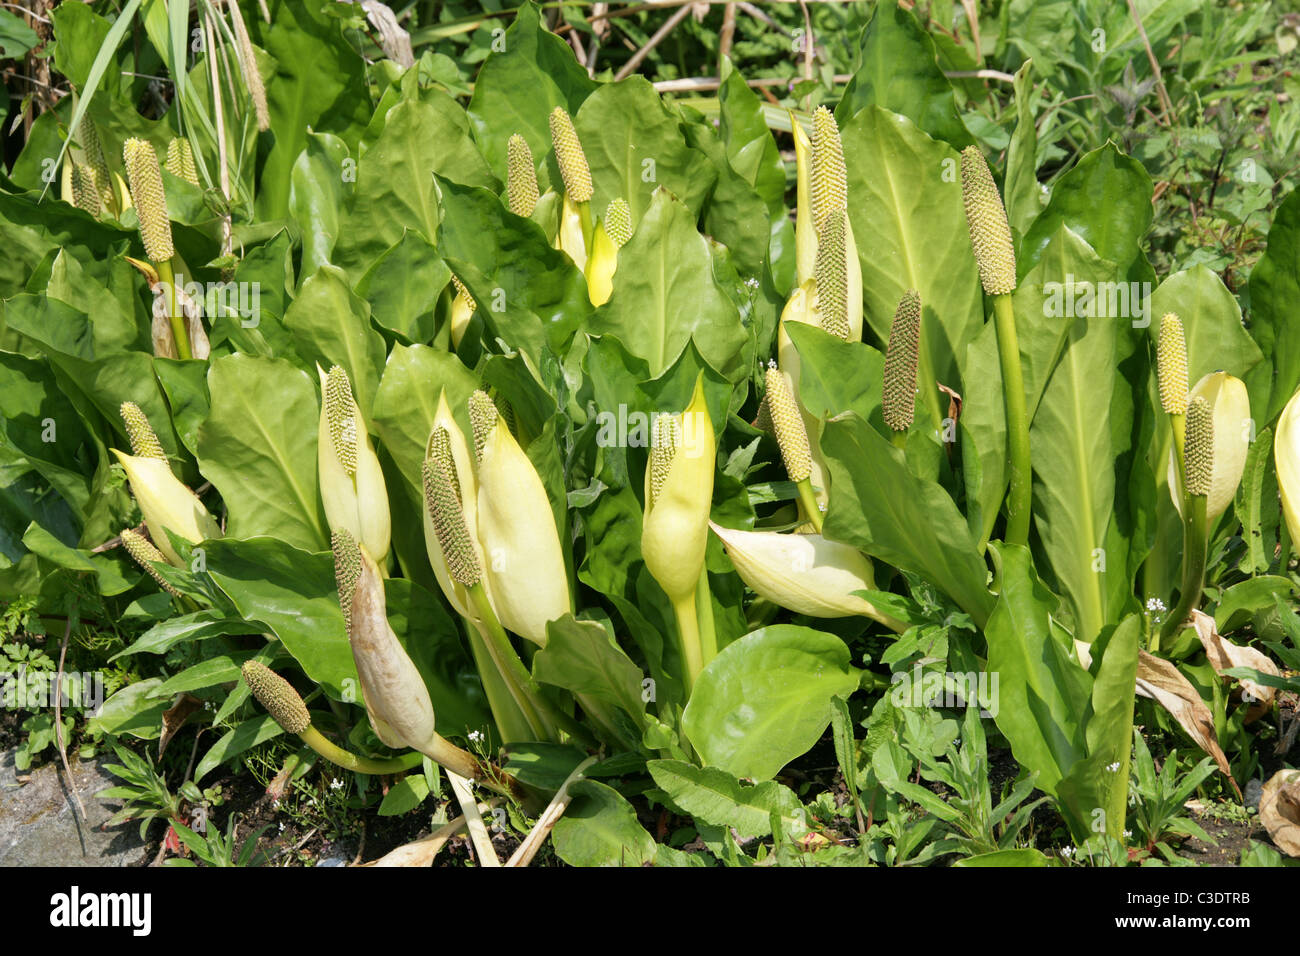 Jaune, choux ou Swamp Lantern, Lysichiton americanus, Araceae. Amérique du Nord, USA, Canada. Banque D'Images